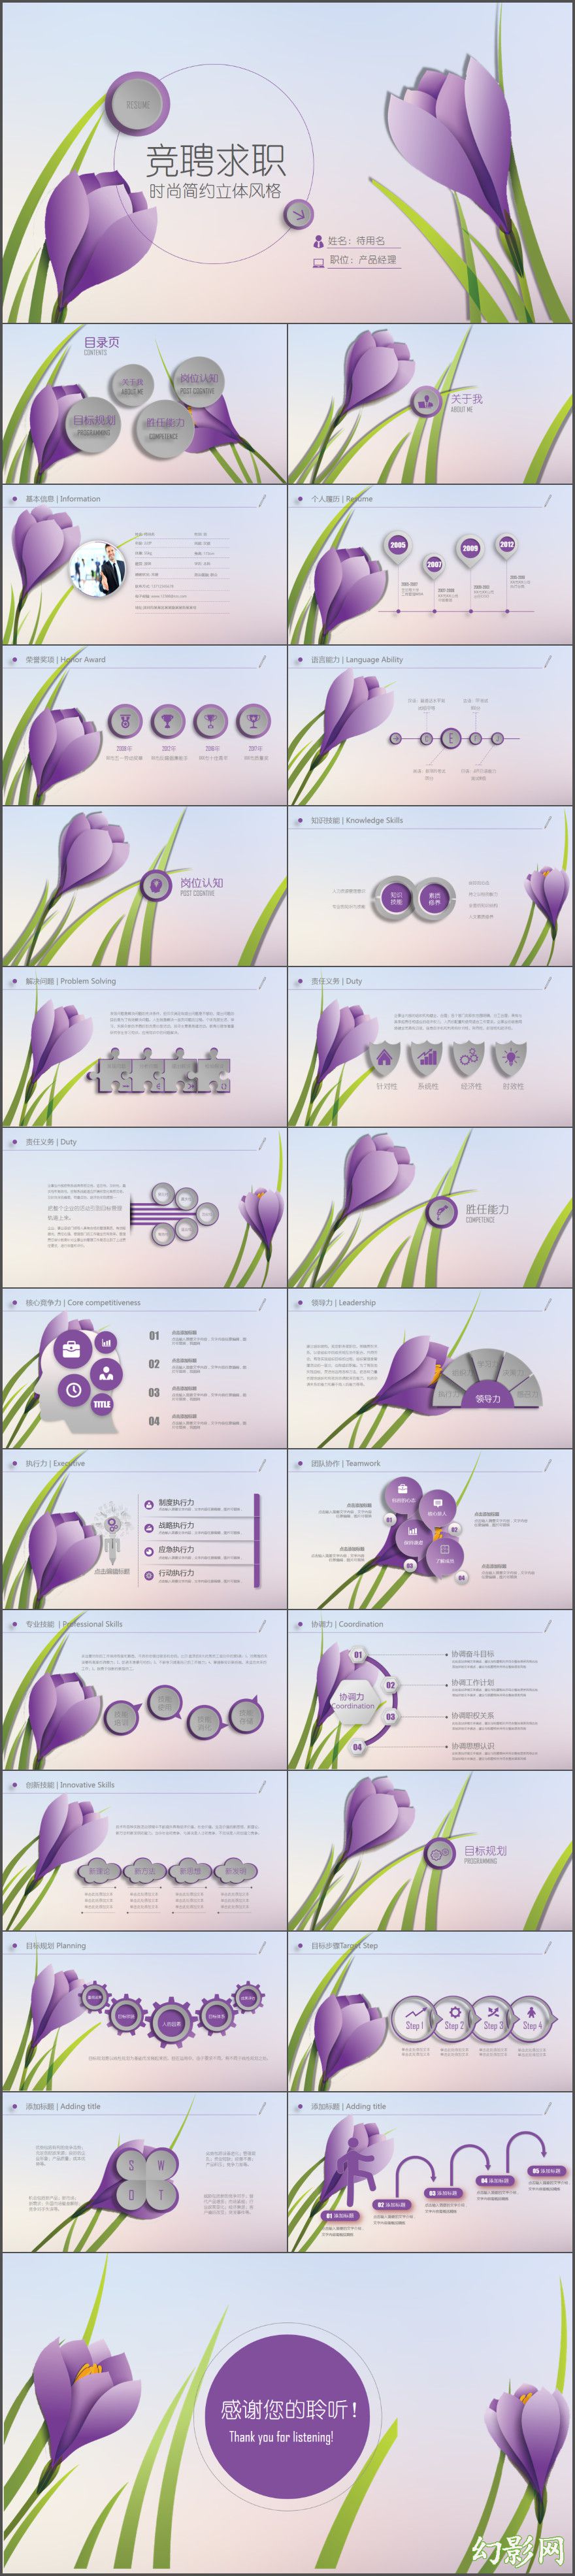 紫色立体花朵岗位竞聘求职简历动态PPT模板